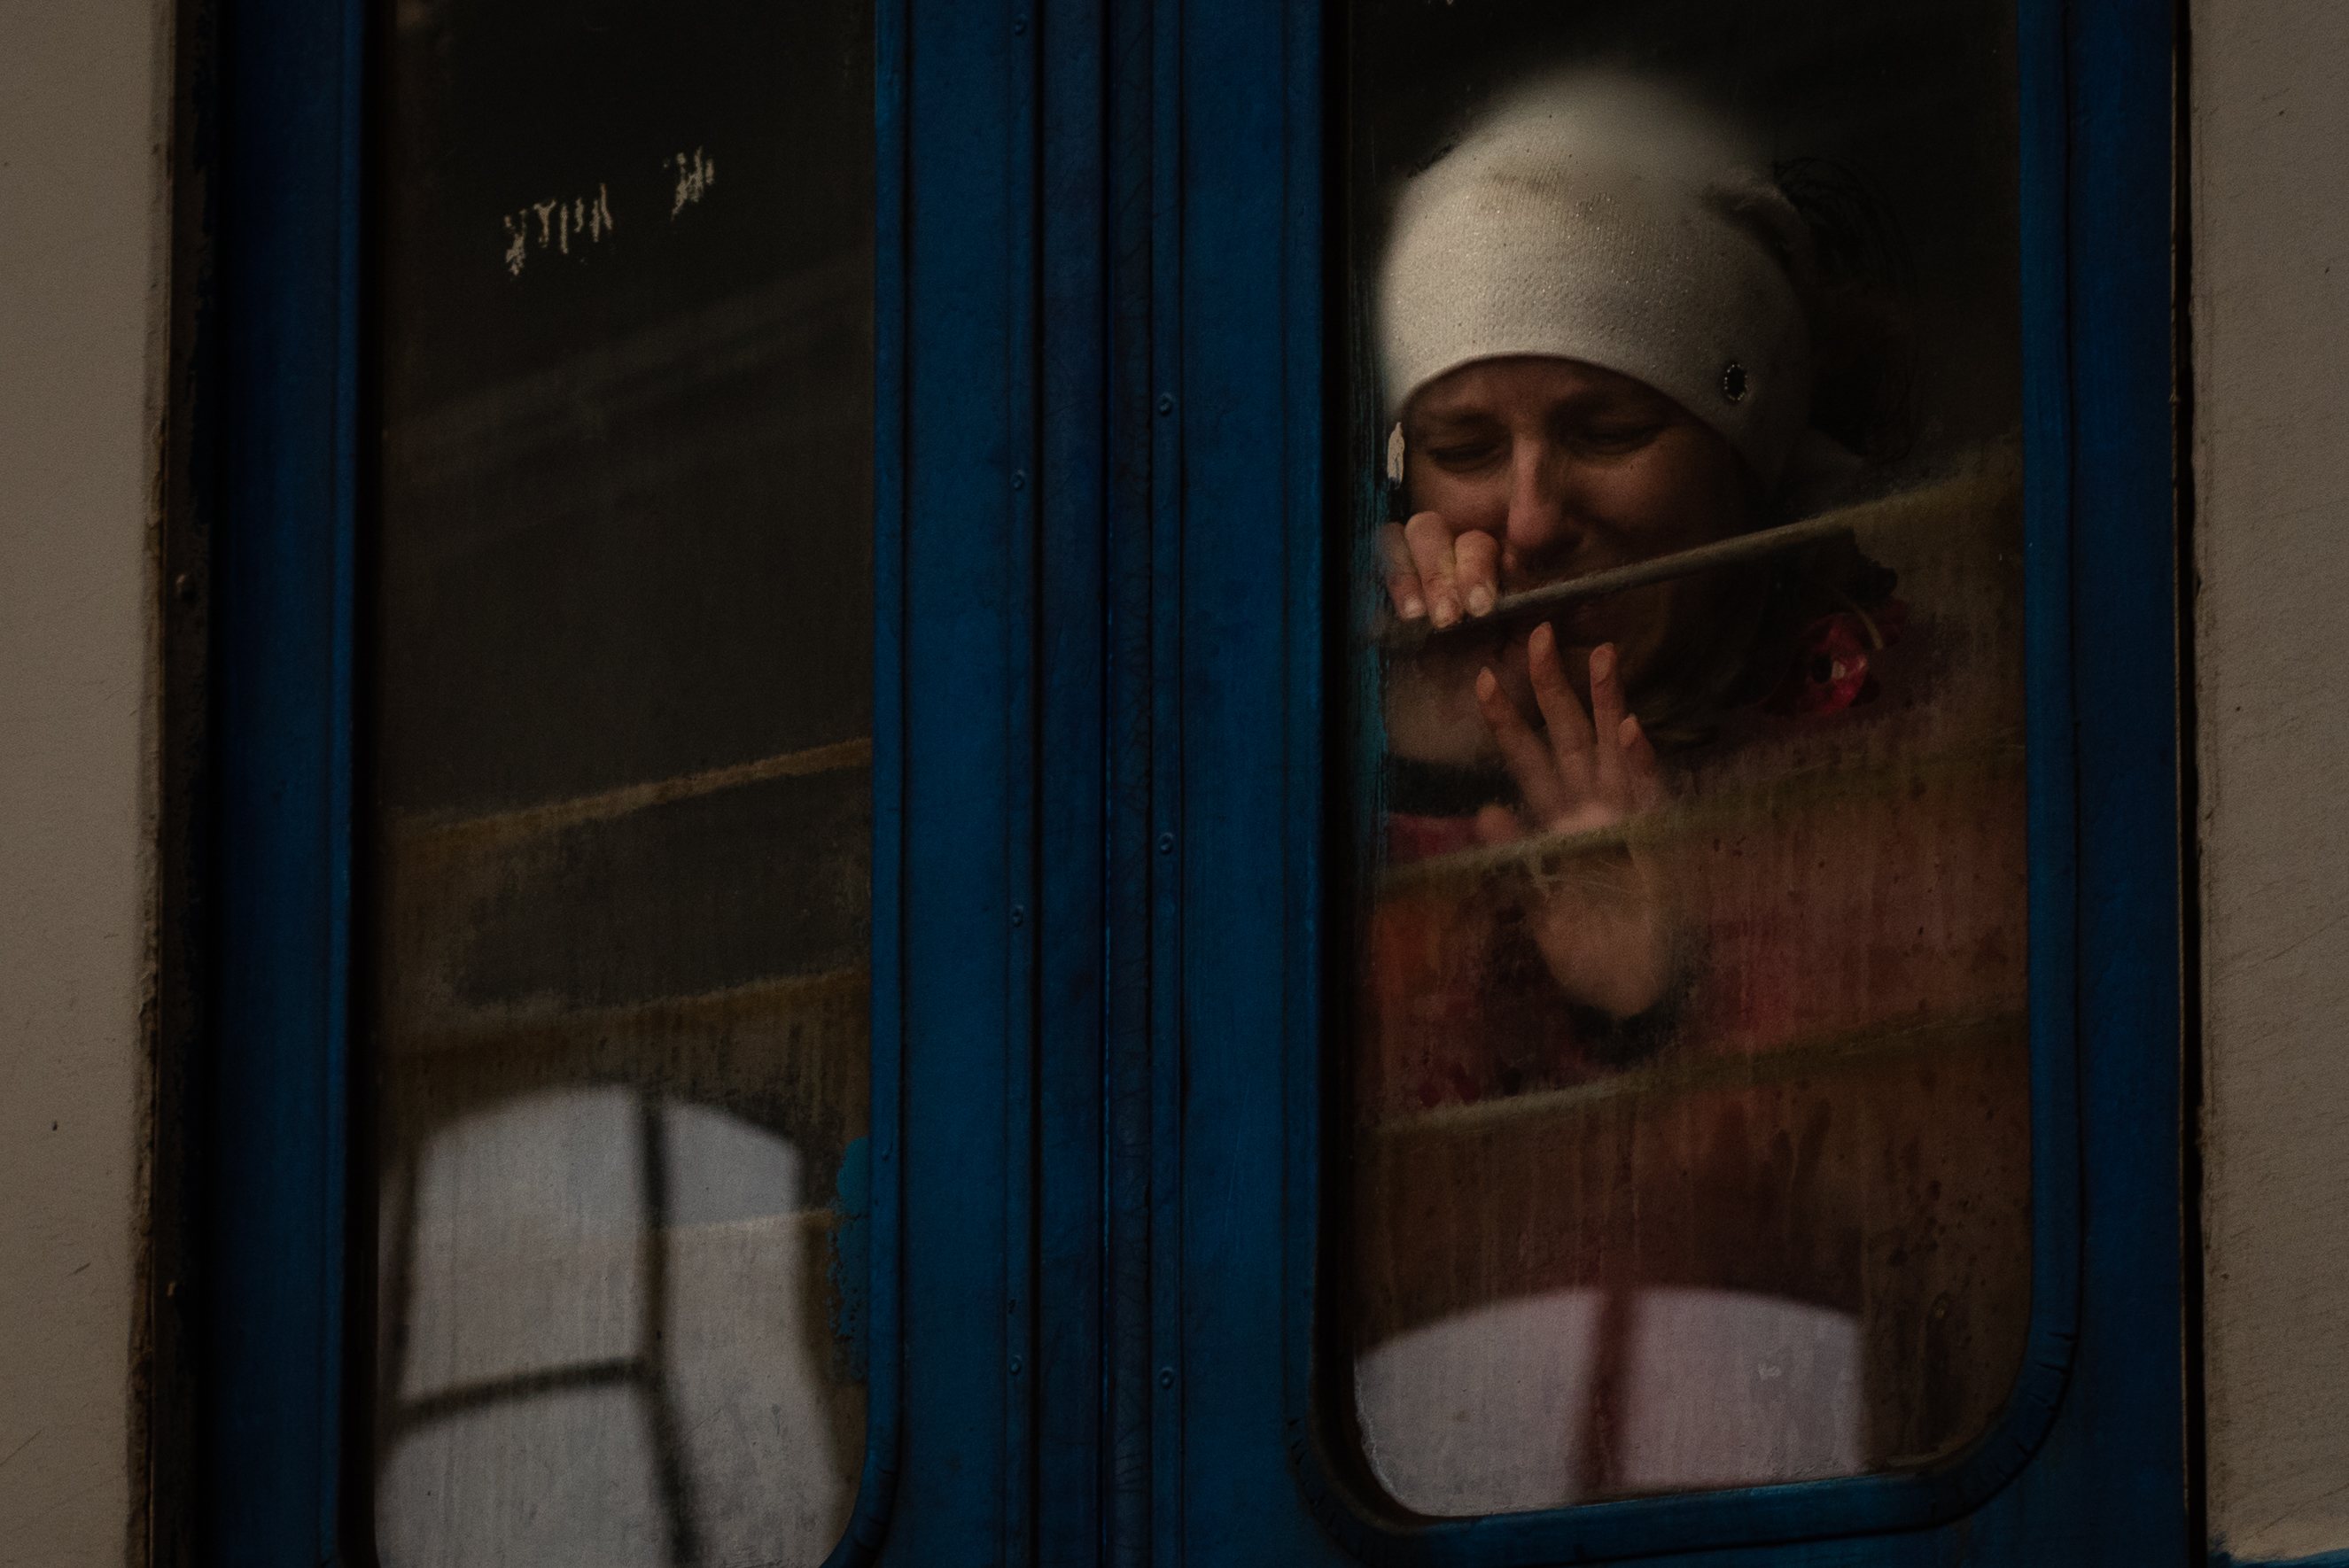 War In Ukraine: Refugee Crisis